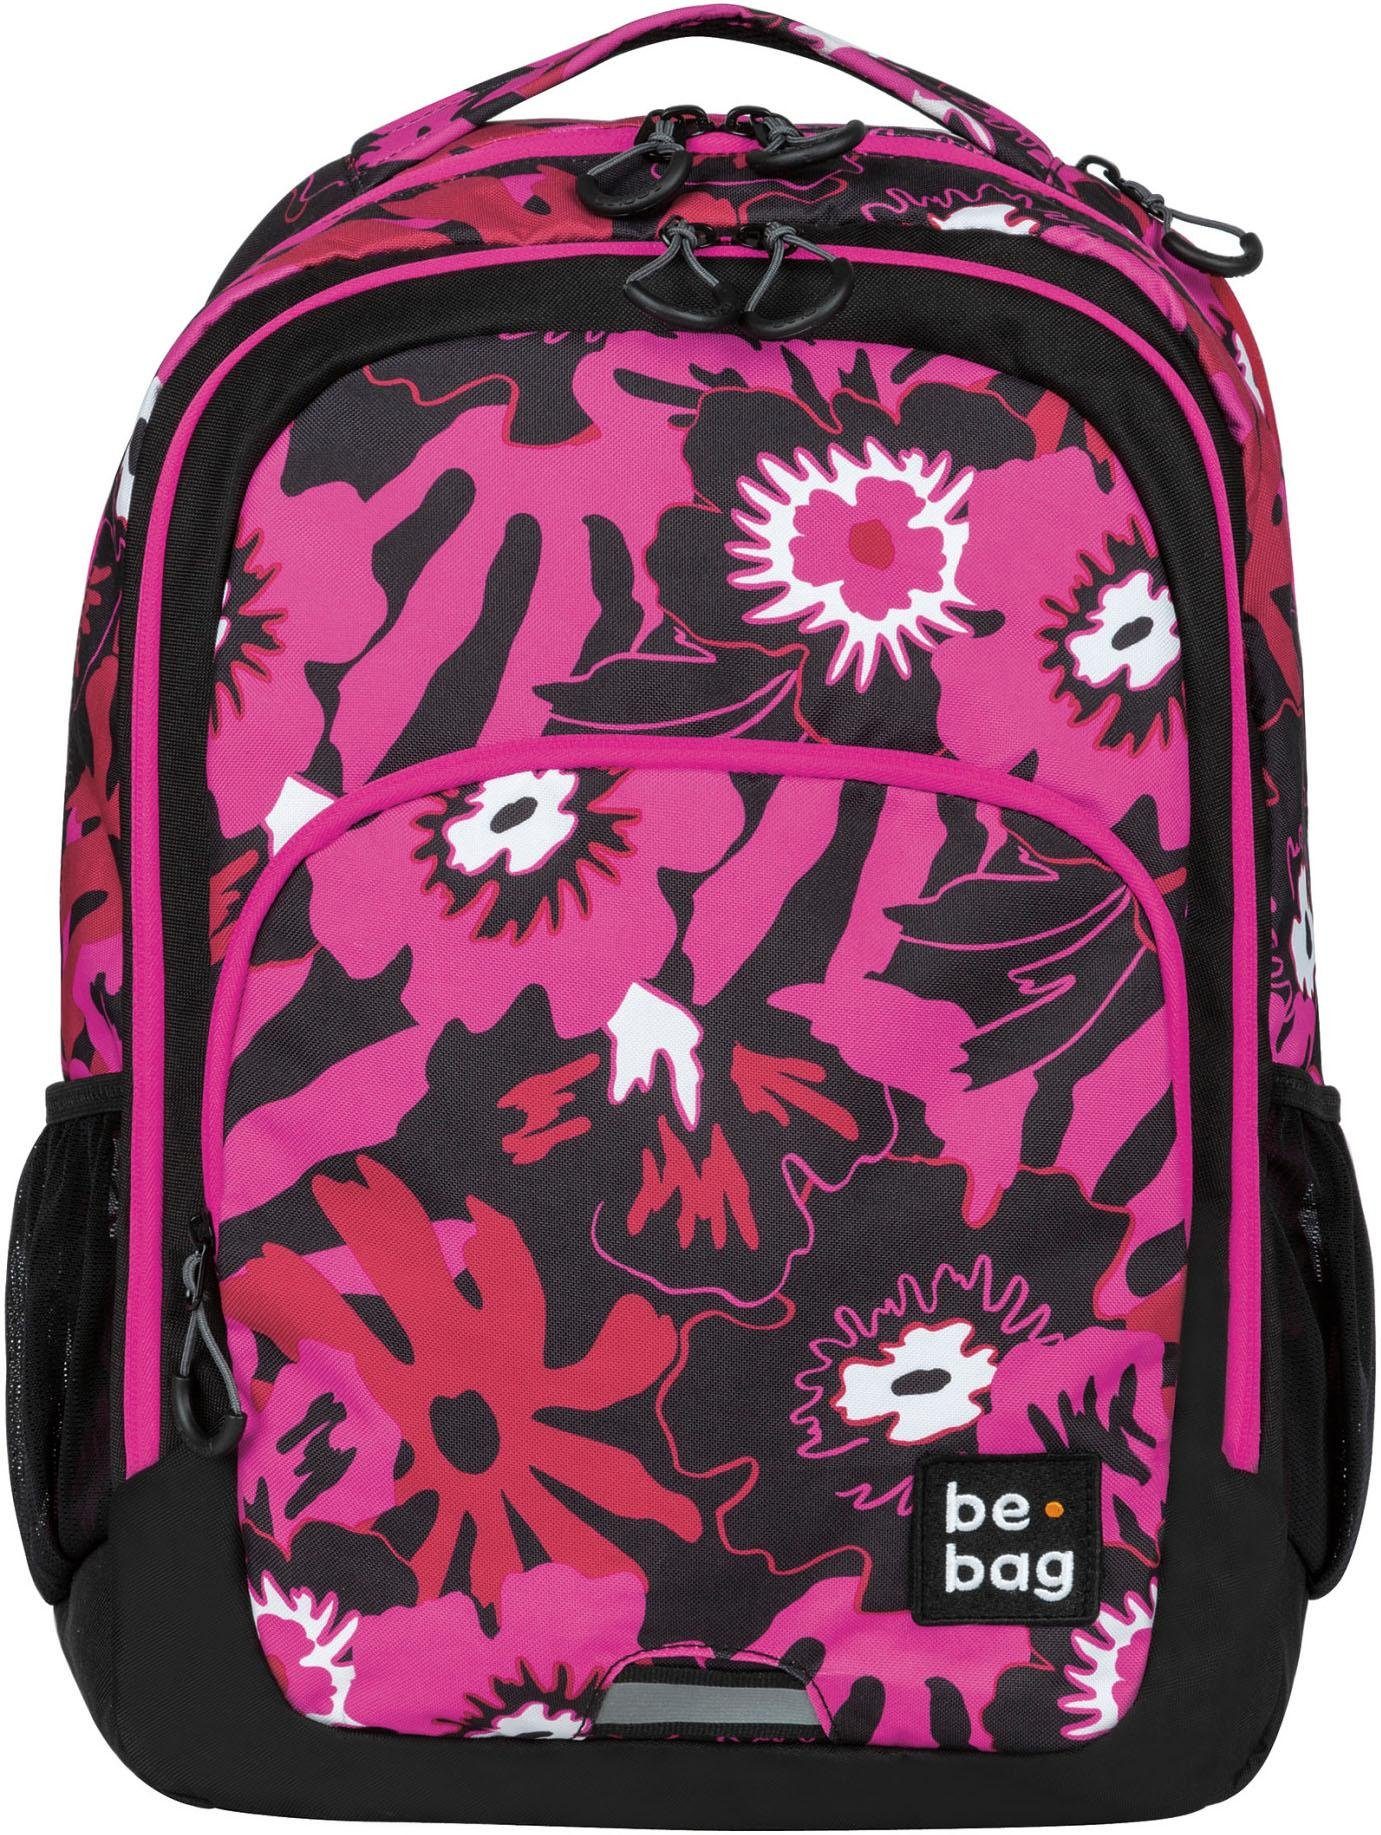 Herlitz Schulrucksack »be.bag be.ready, pink summer« online kaufen | OTTO